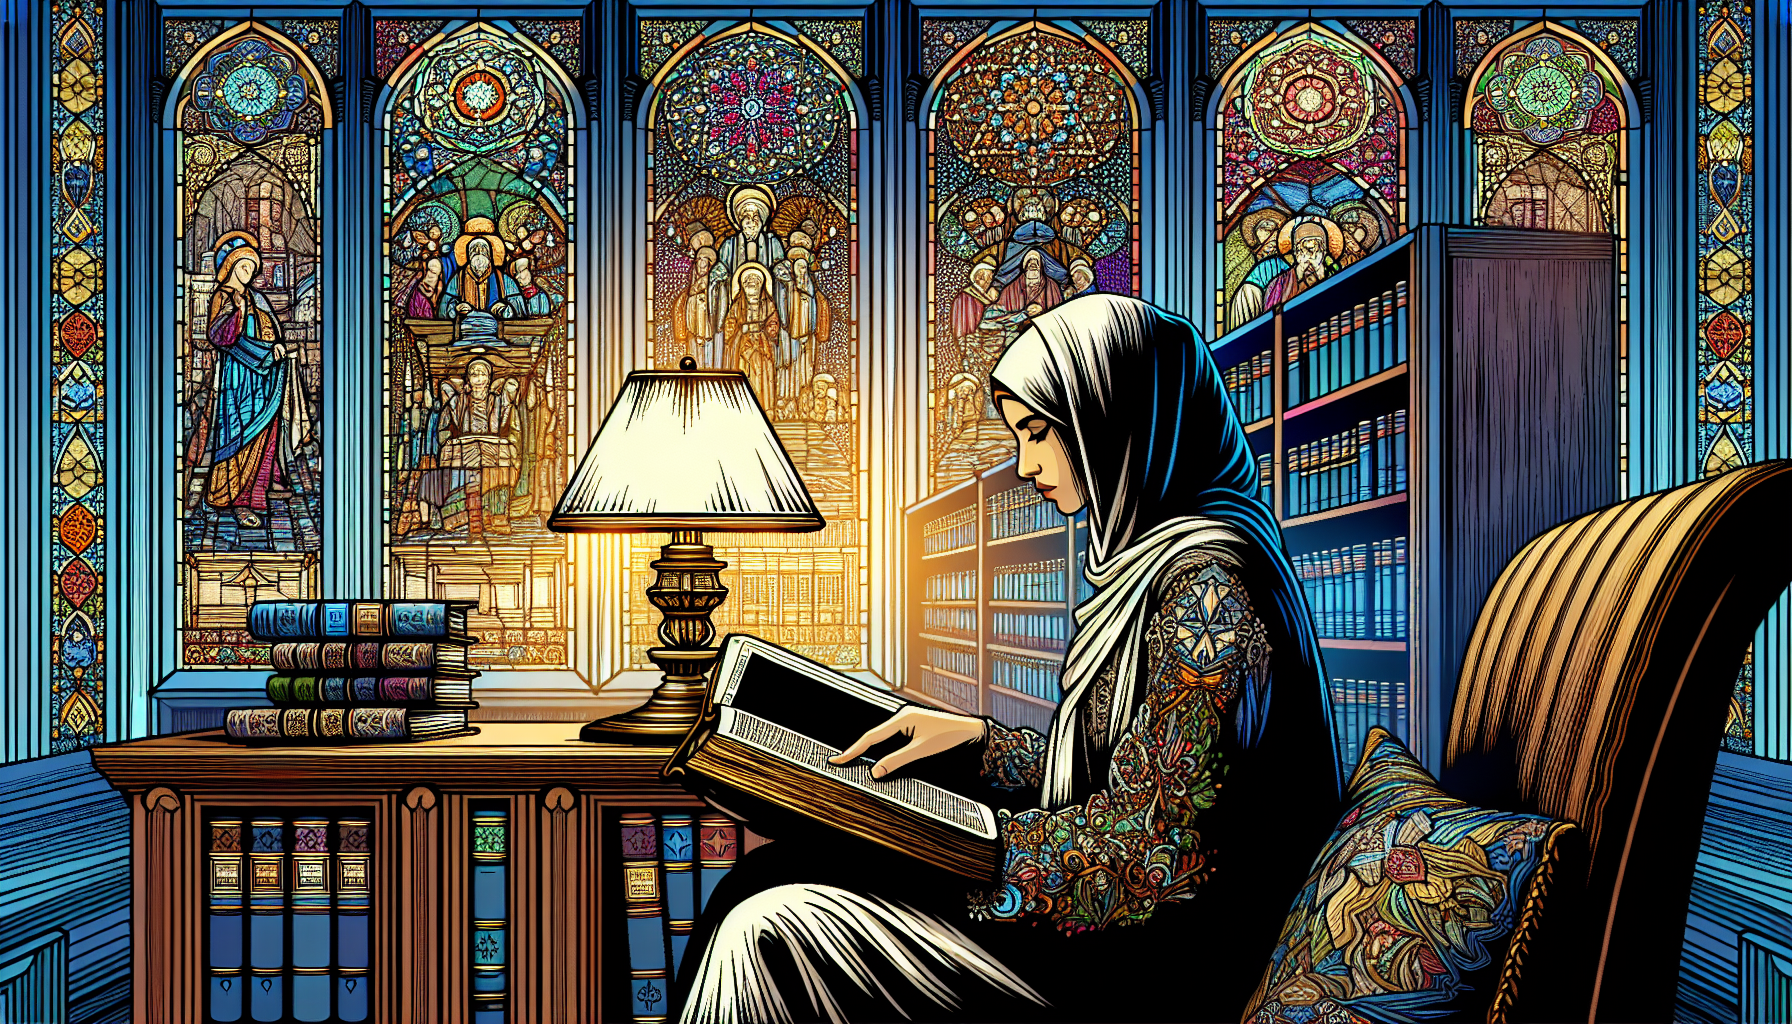 Una imagen de una persona leyendo una biblia grande y antigua bajo la luz suave de una lámpara en una biblioteca clásica, con vitrales que muestran escenas de justicia bíblica en el fondo.